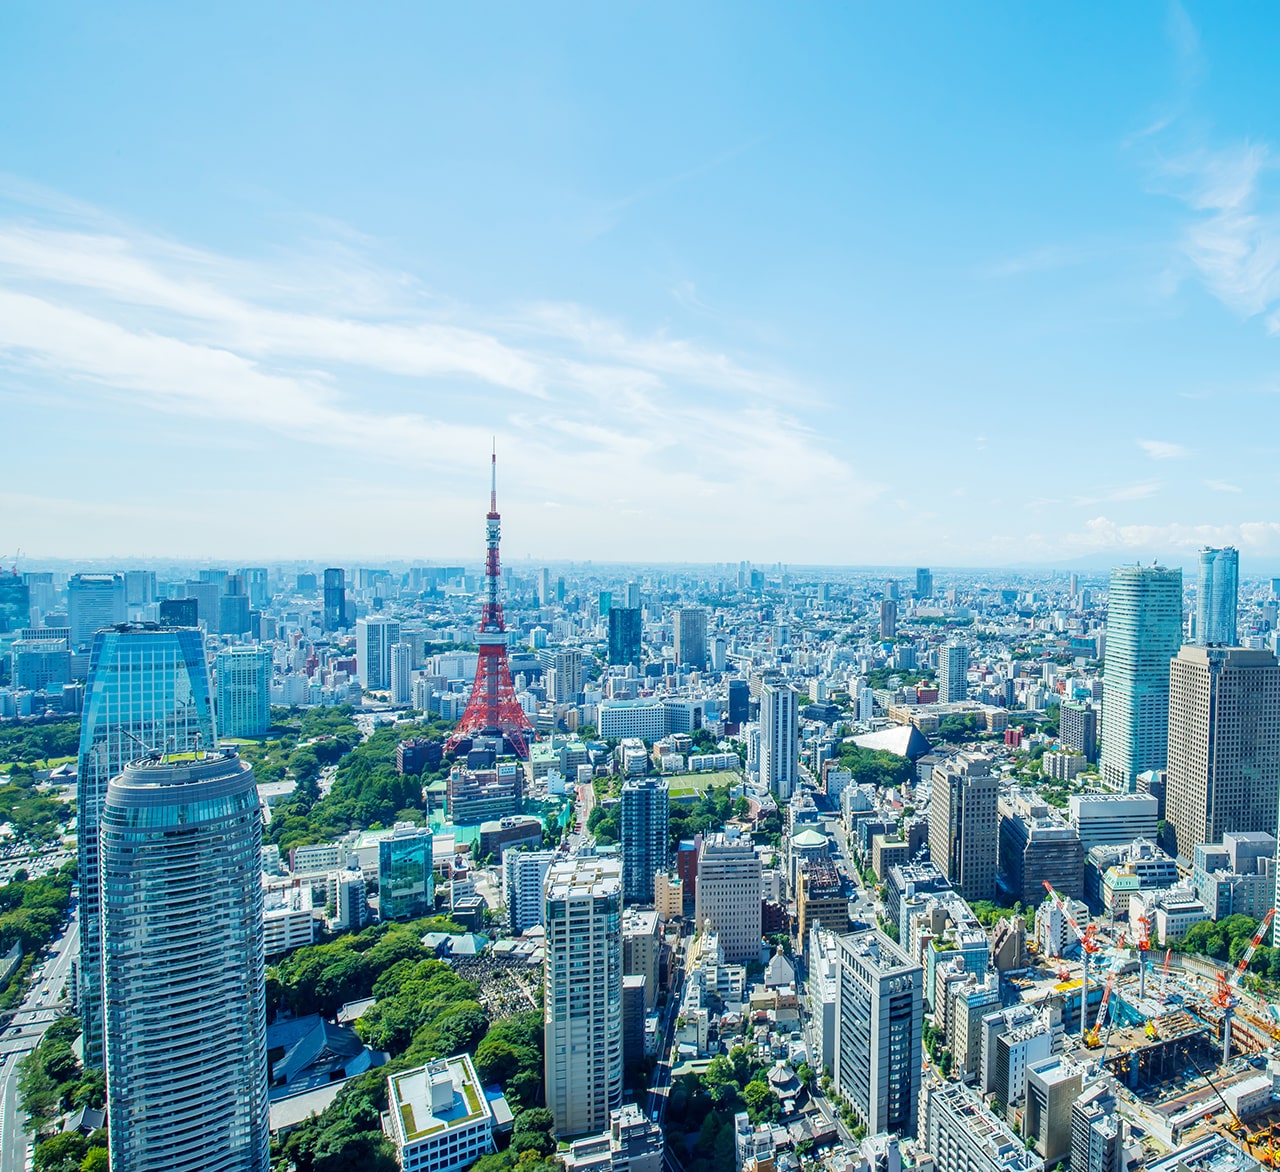 東京の街並みが映った背景写真